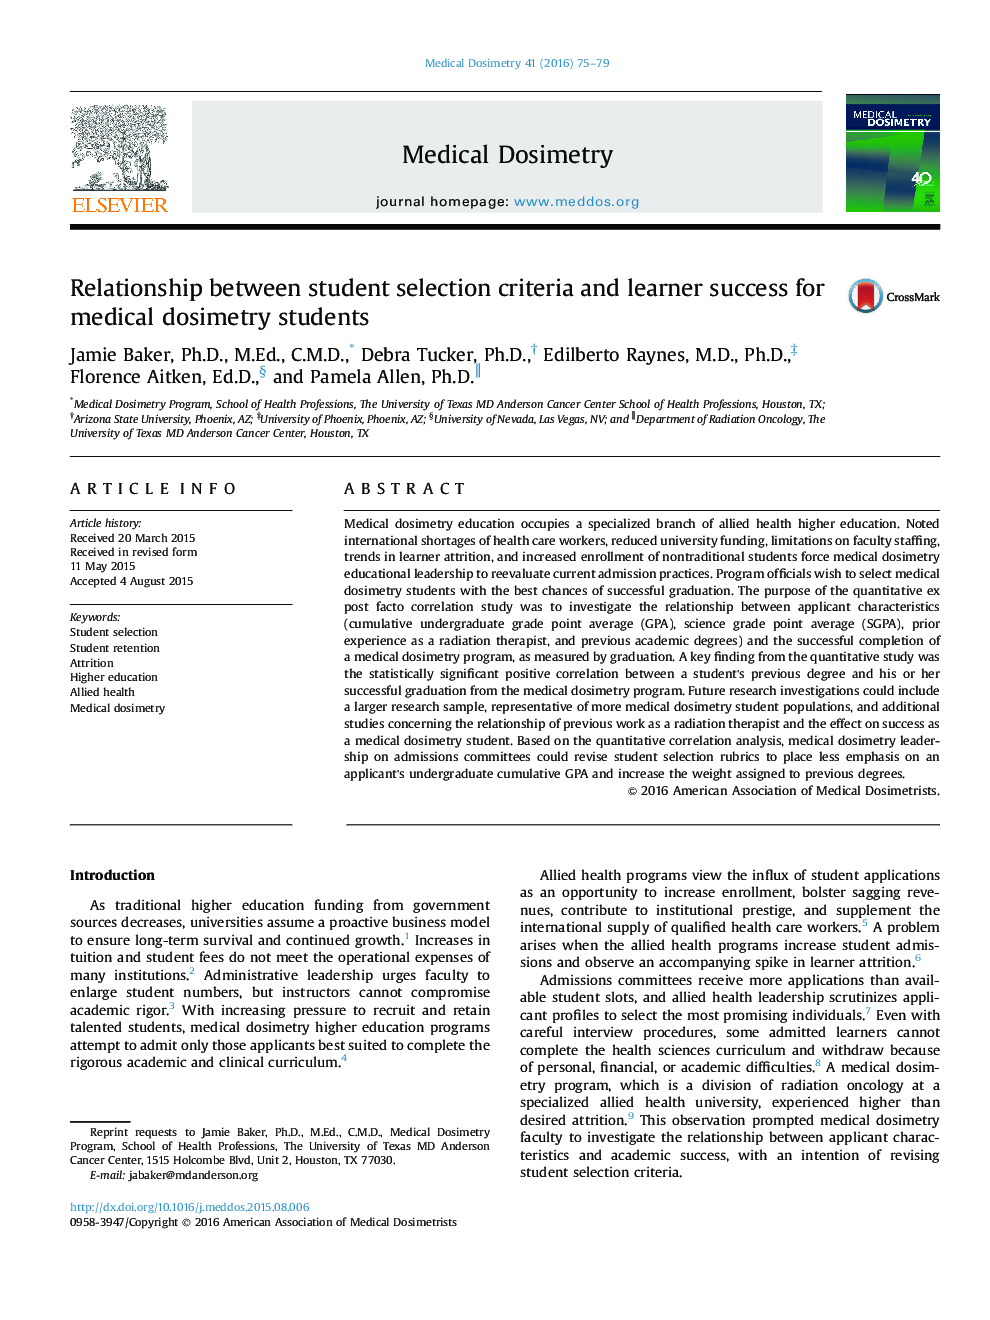 رابطه معیارهای انتخاب دانشجو و موفقیت دانش آموزان برای دانش آموزان دزیموری پزشکی 